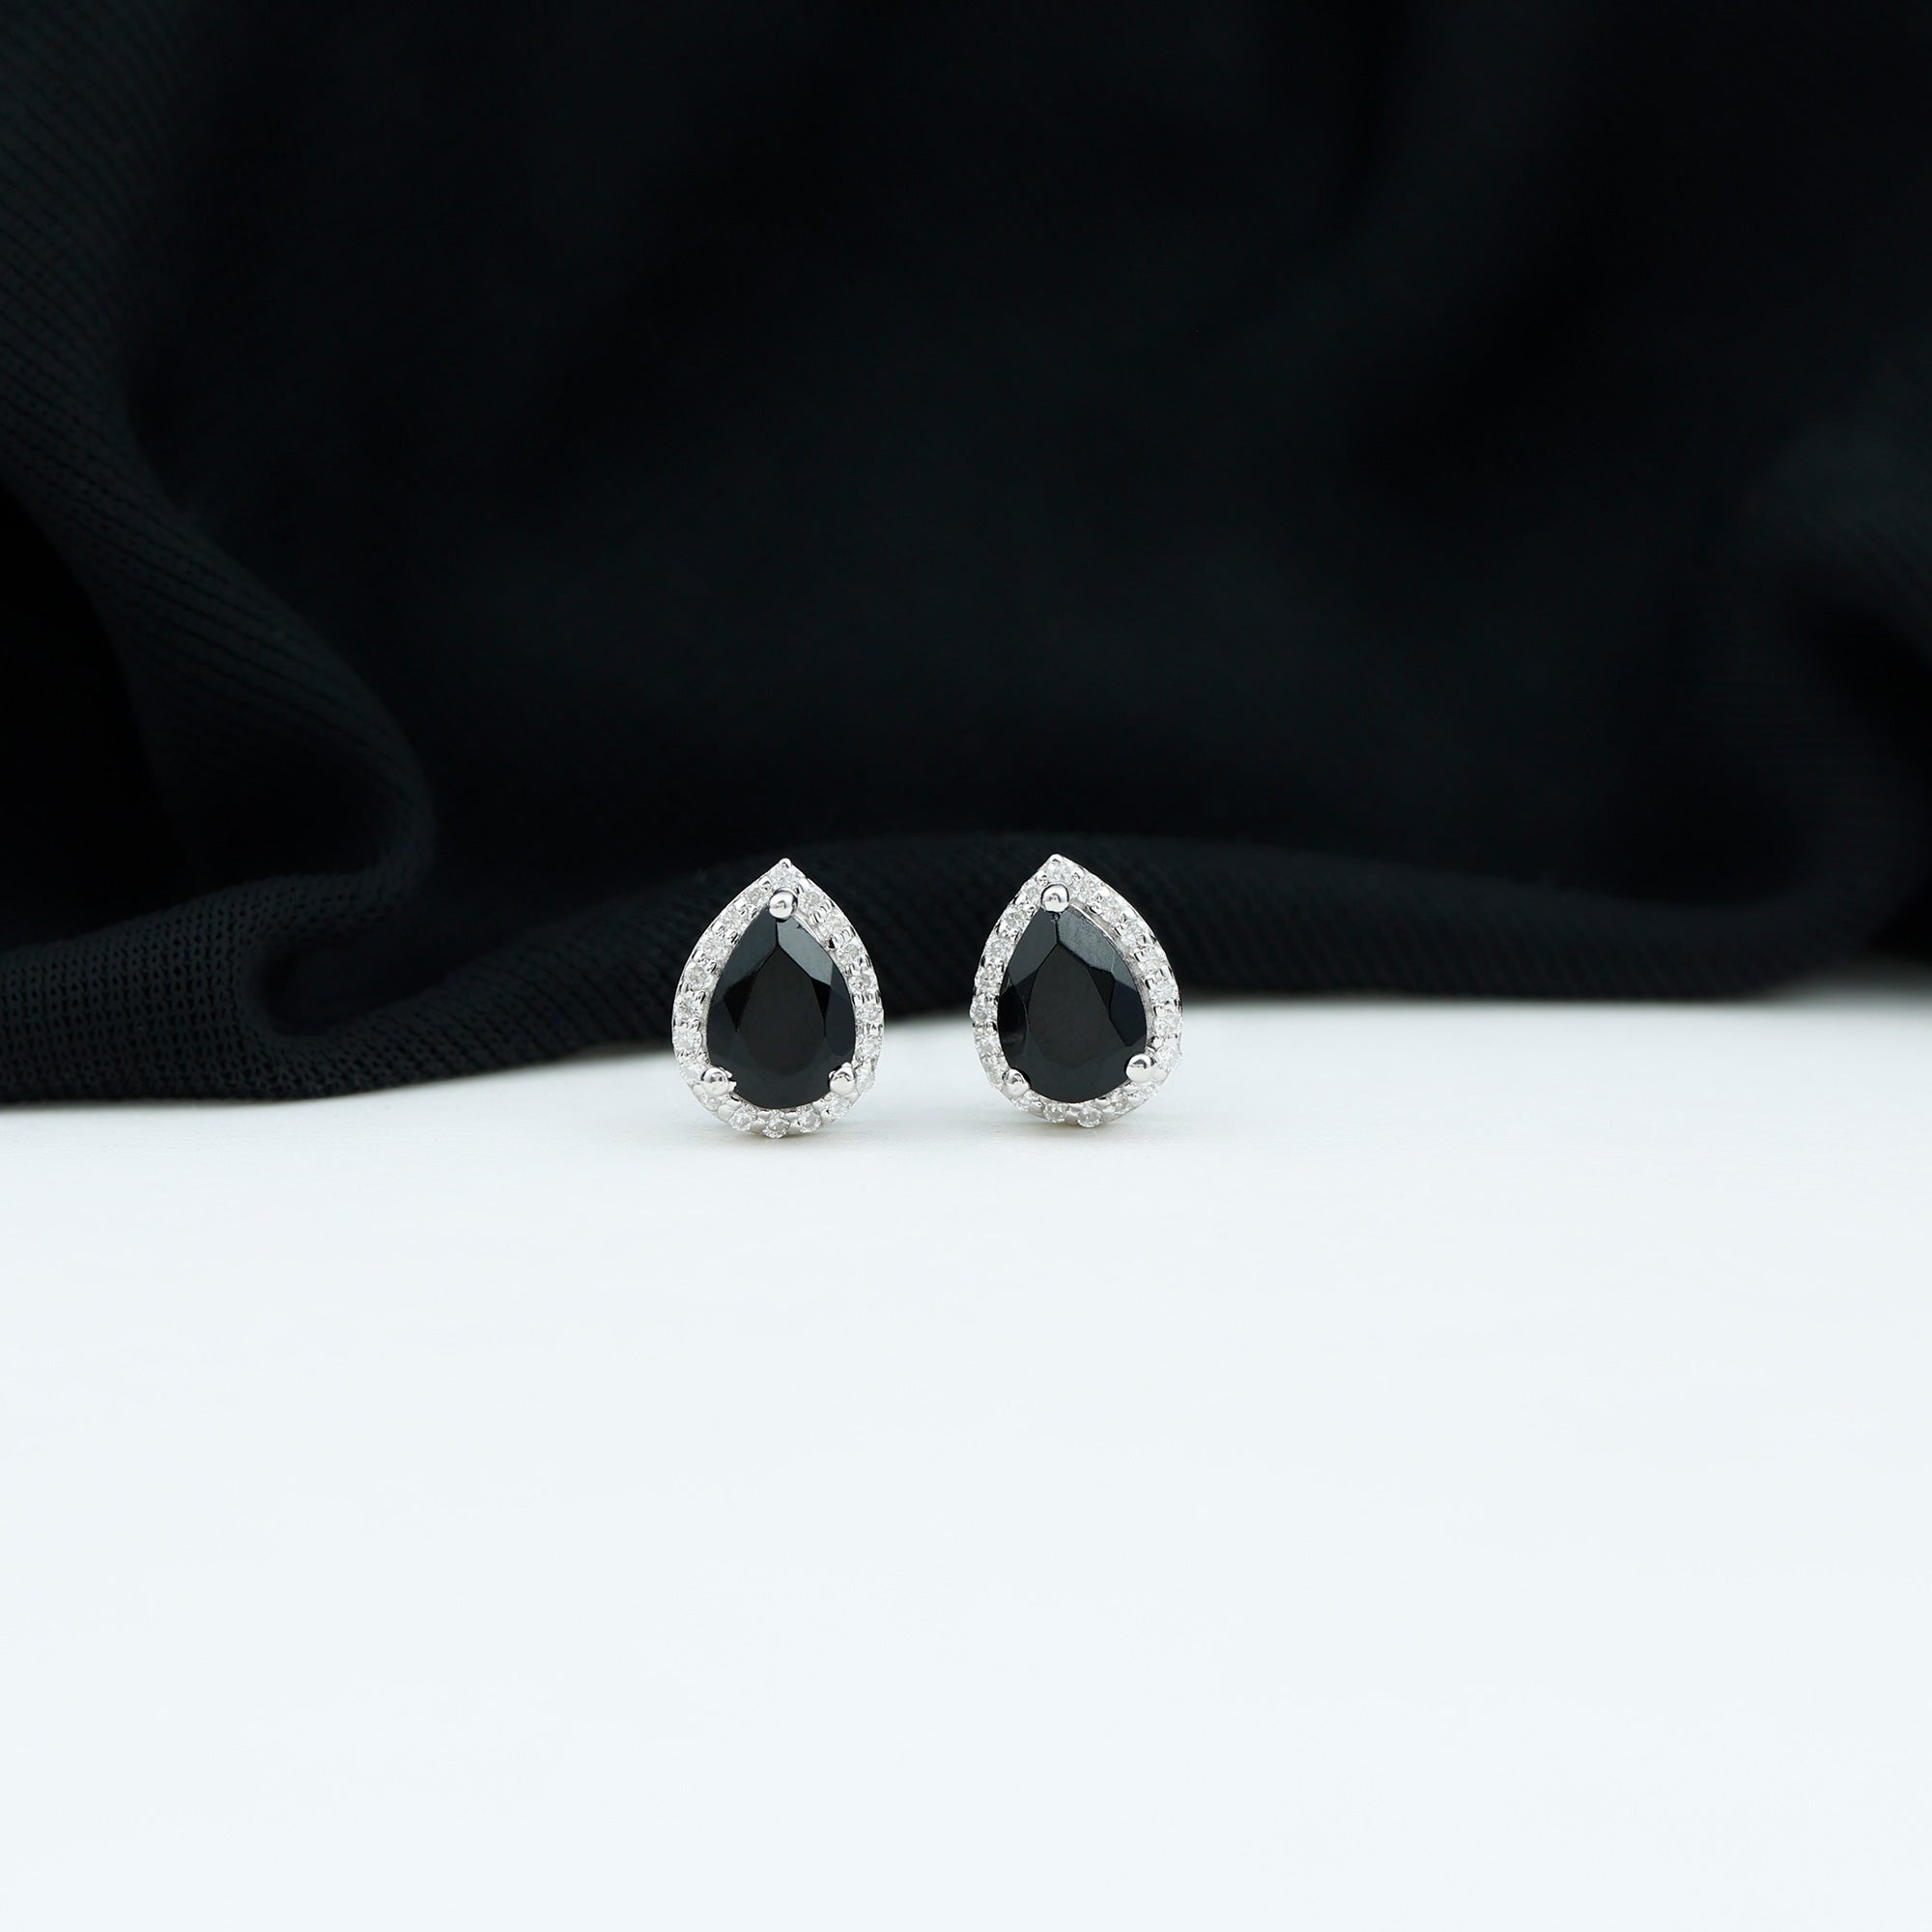 1.75 CT Pear Cut Created Black Diamond Halo Stud Earrings with White Diamond Lab Created Black Diamond - ( AAAA ) - Quality - Rosec Jewels